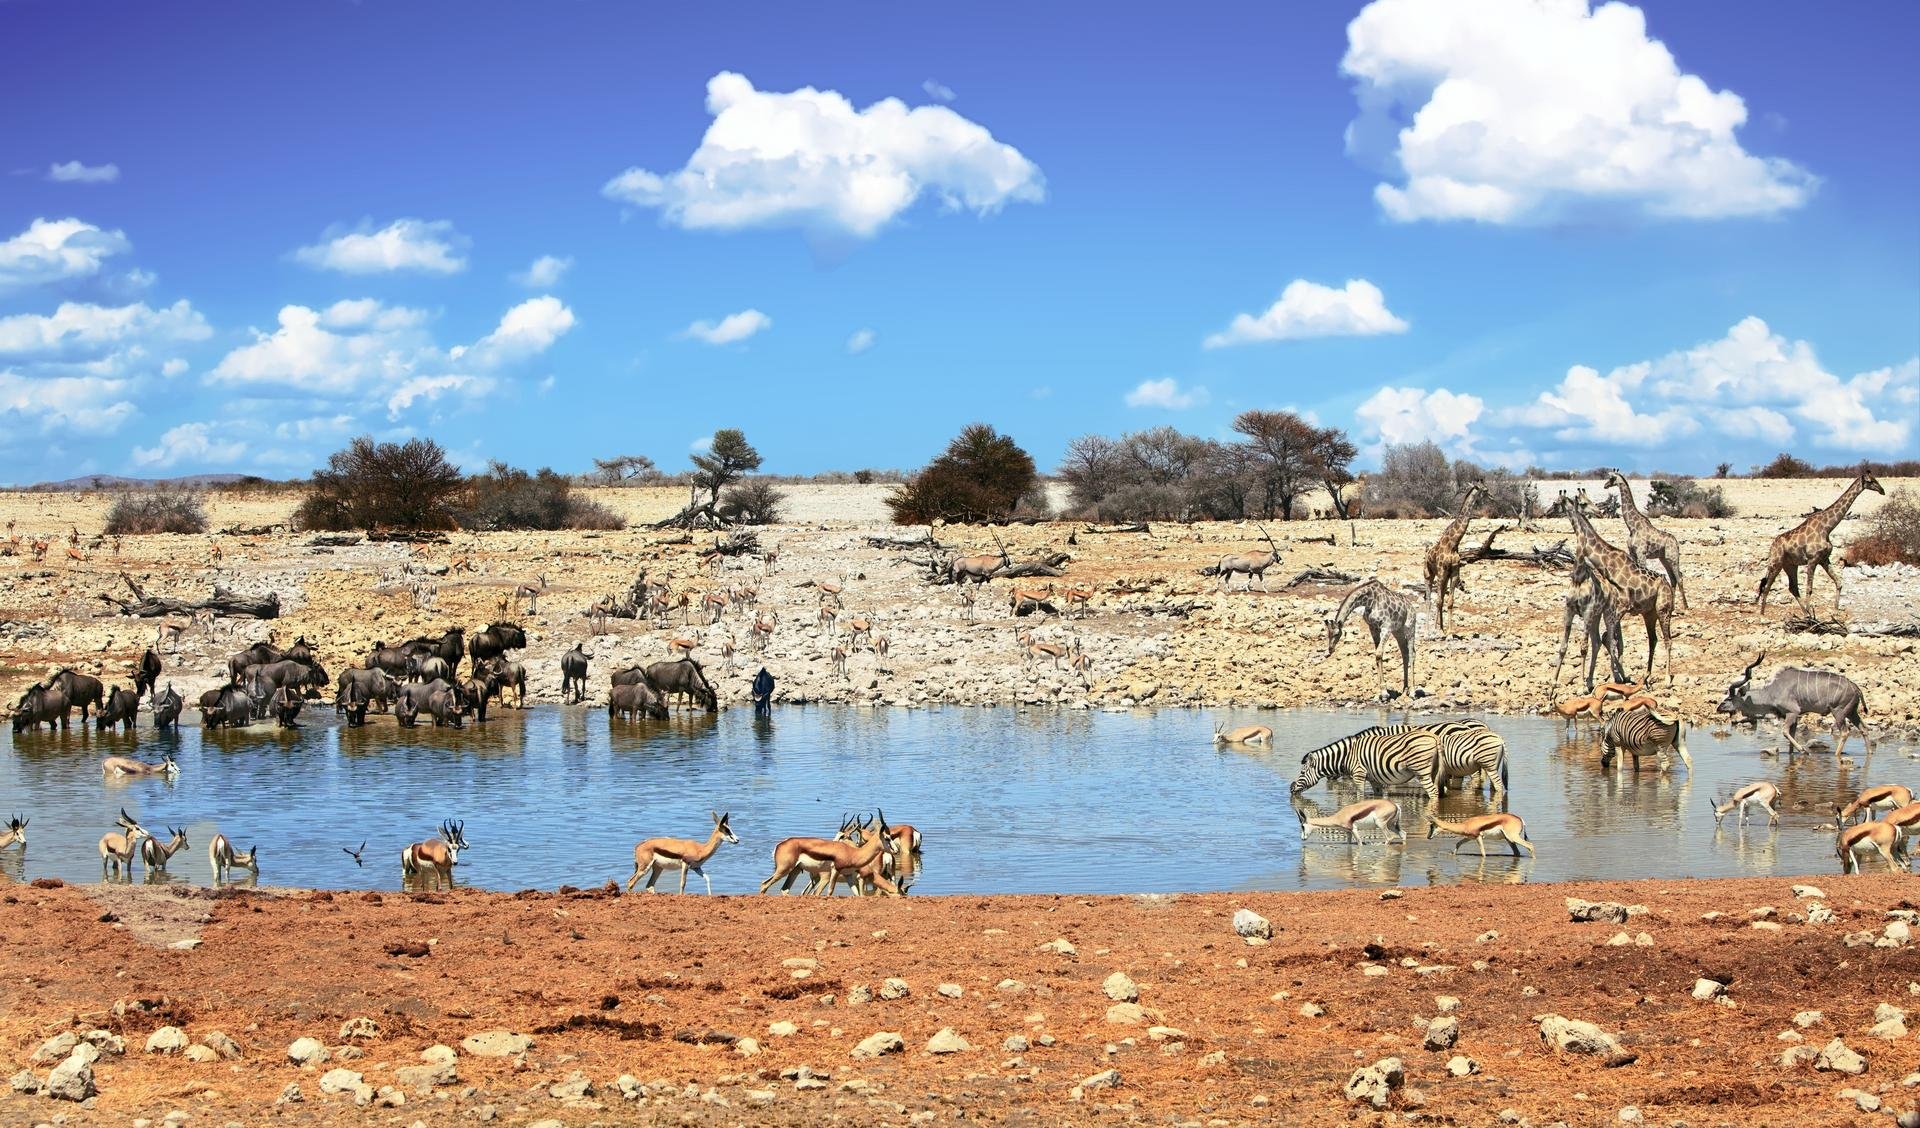 Parc National d'Etosha   Namibie